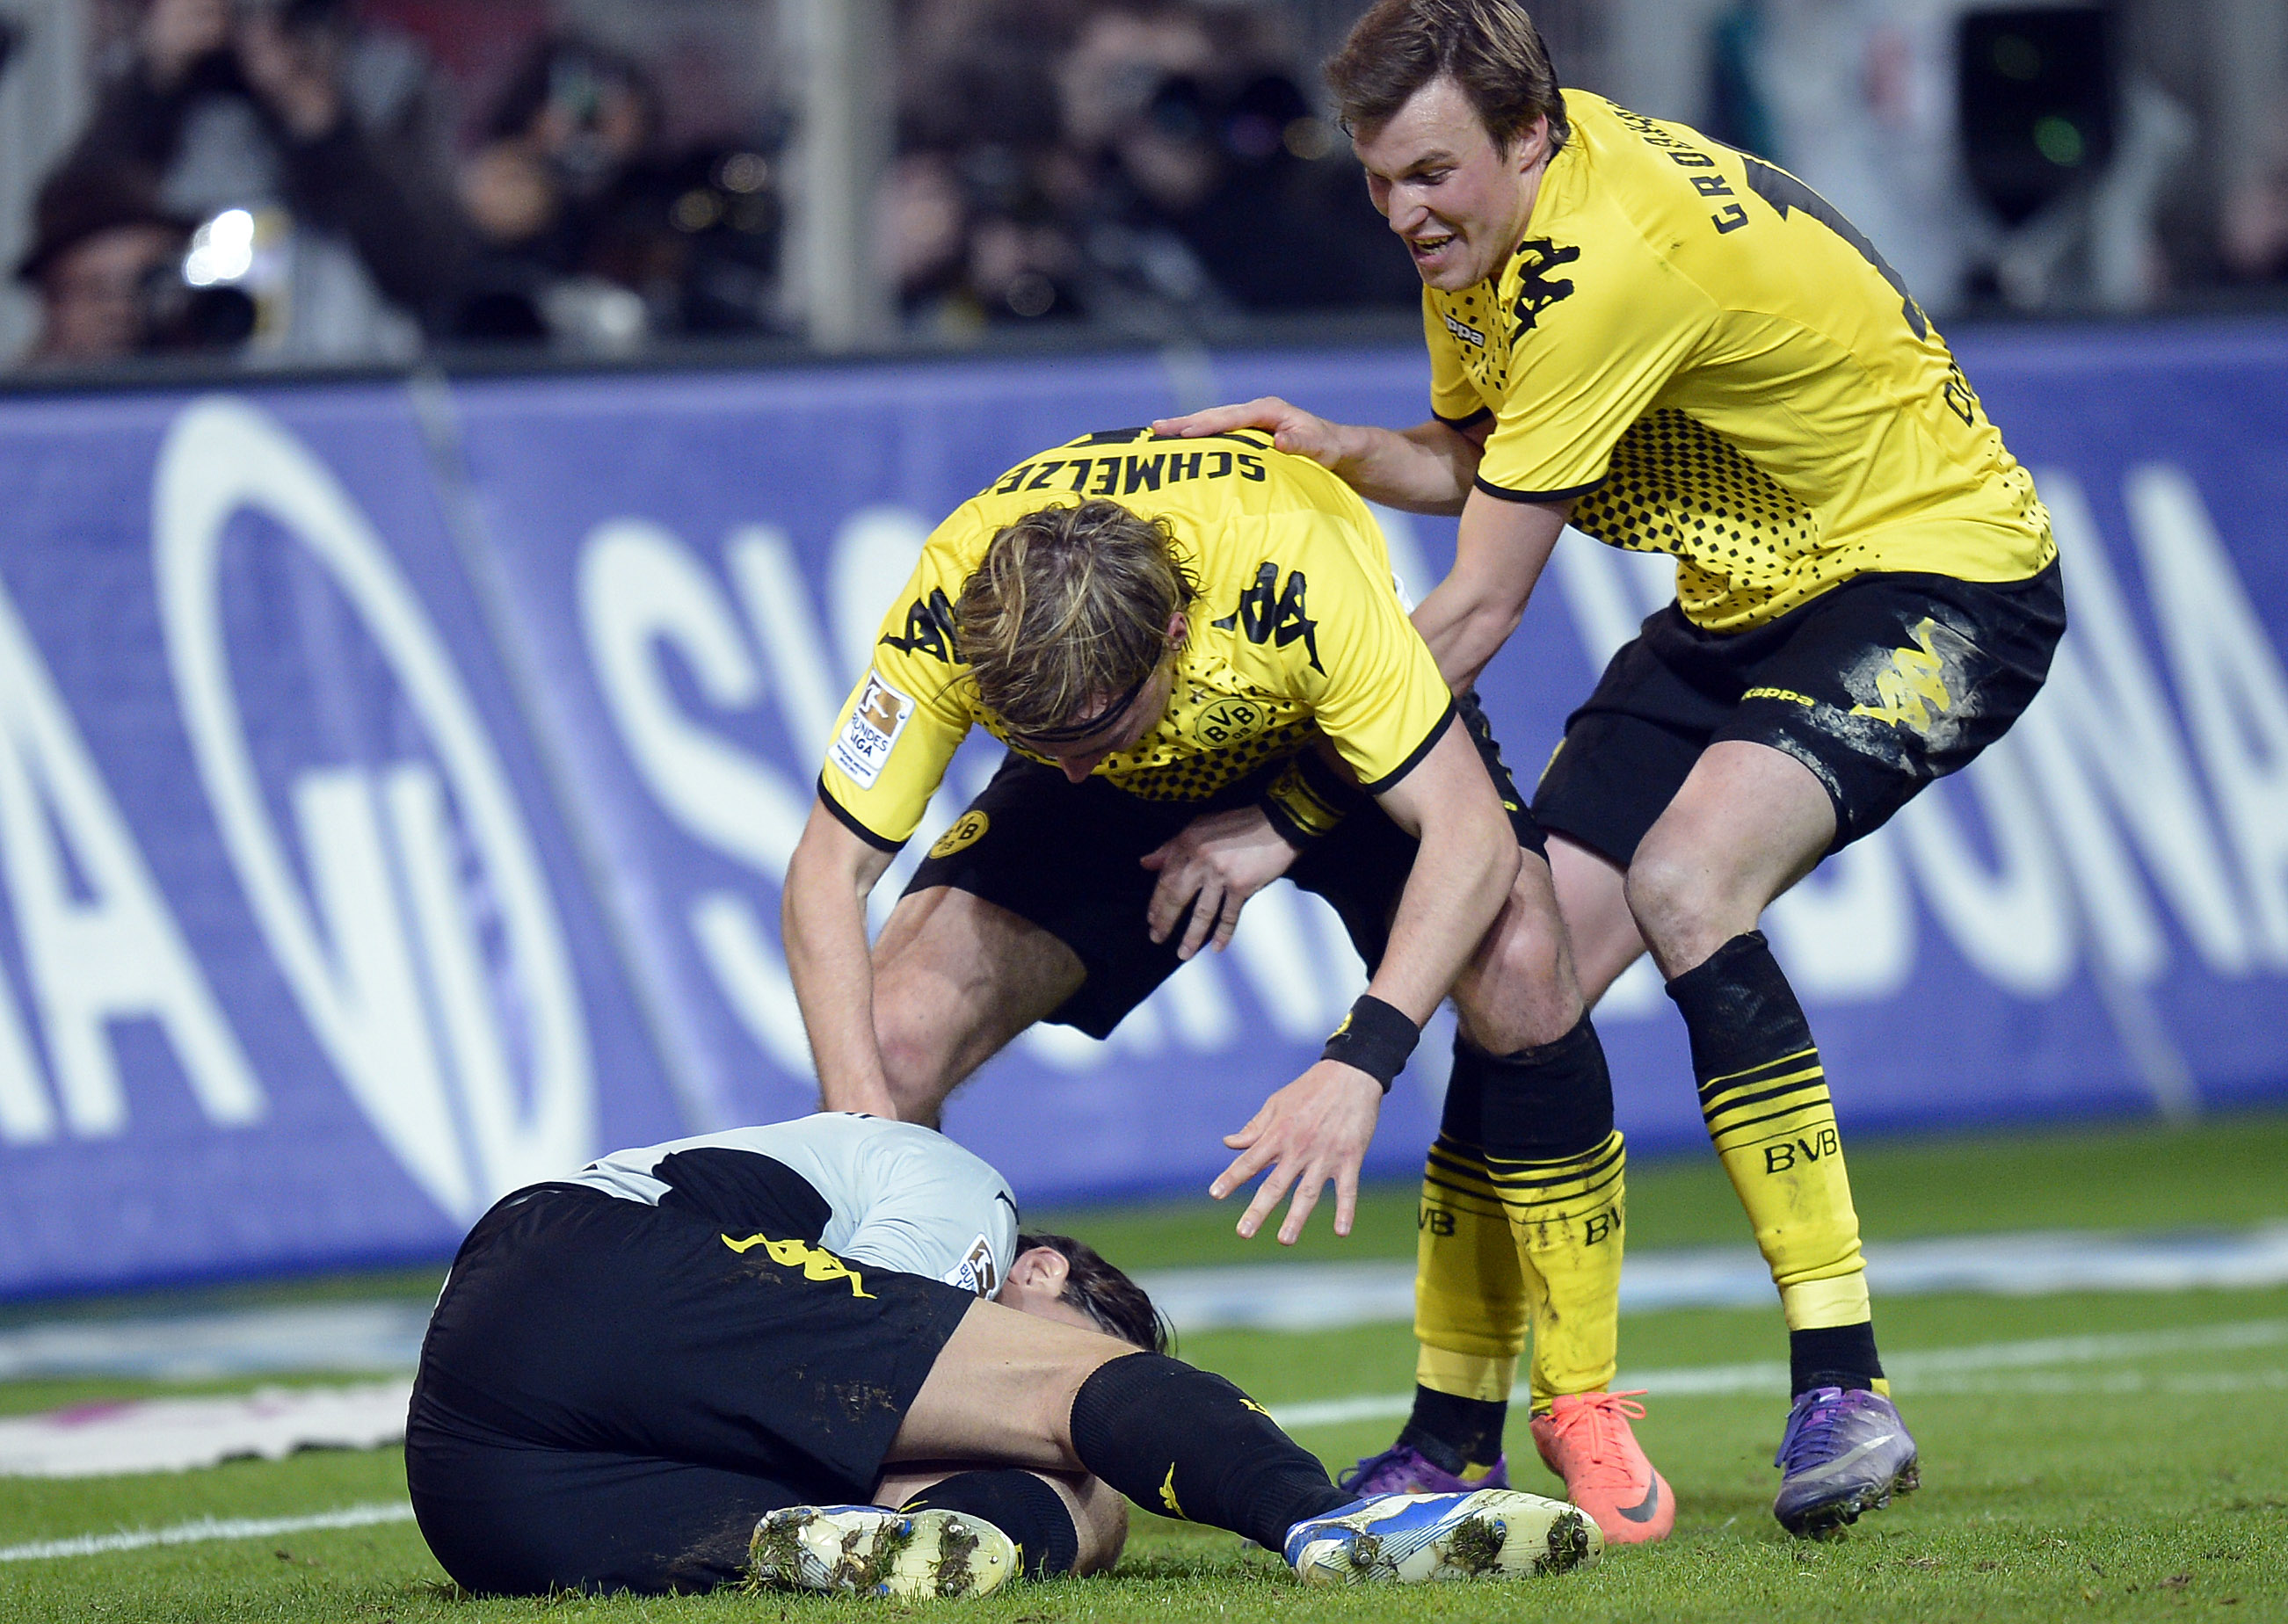 Dortmund-spelarna firar efter att Roman Weidenfeller
räddat Robbens straff.